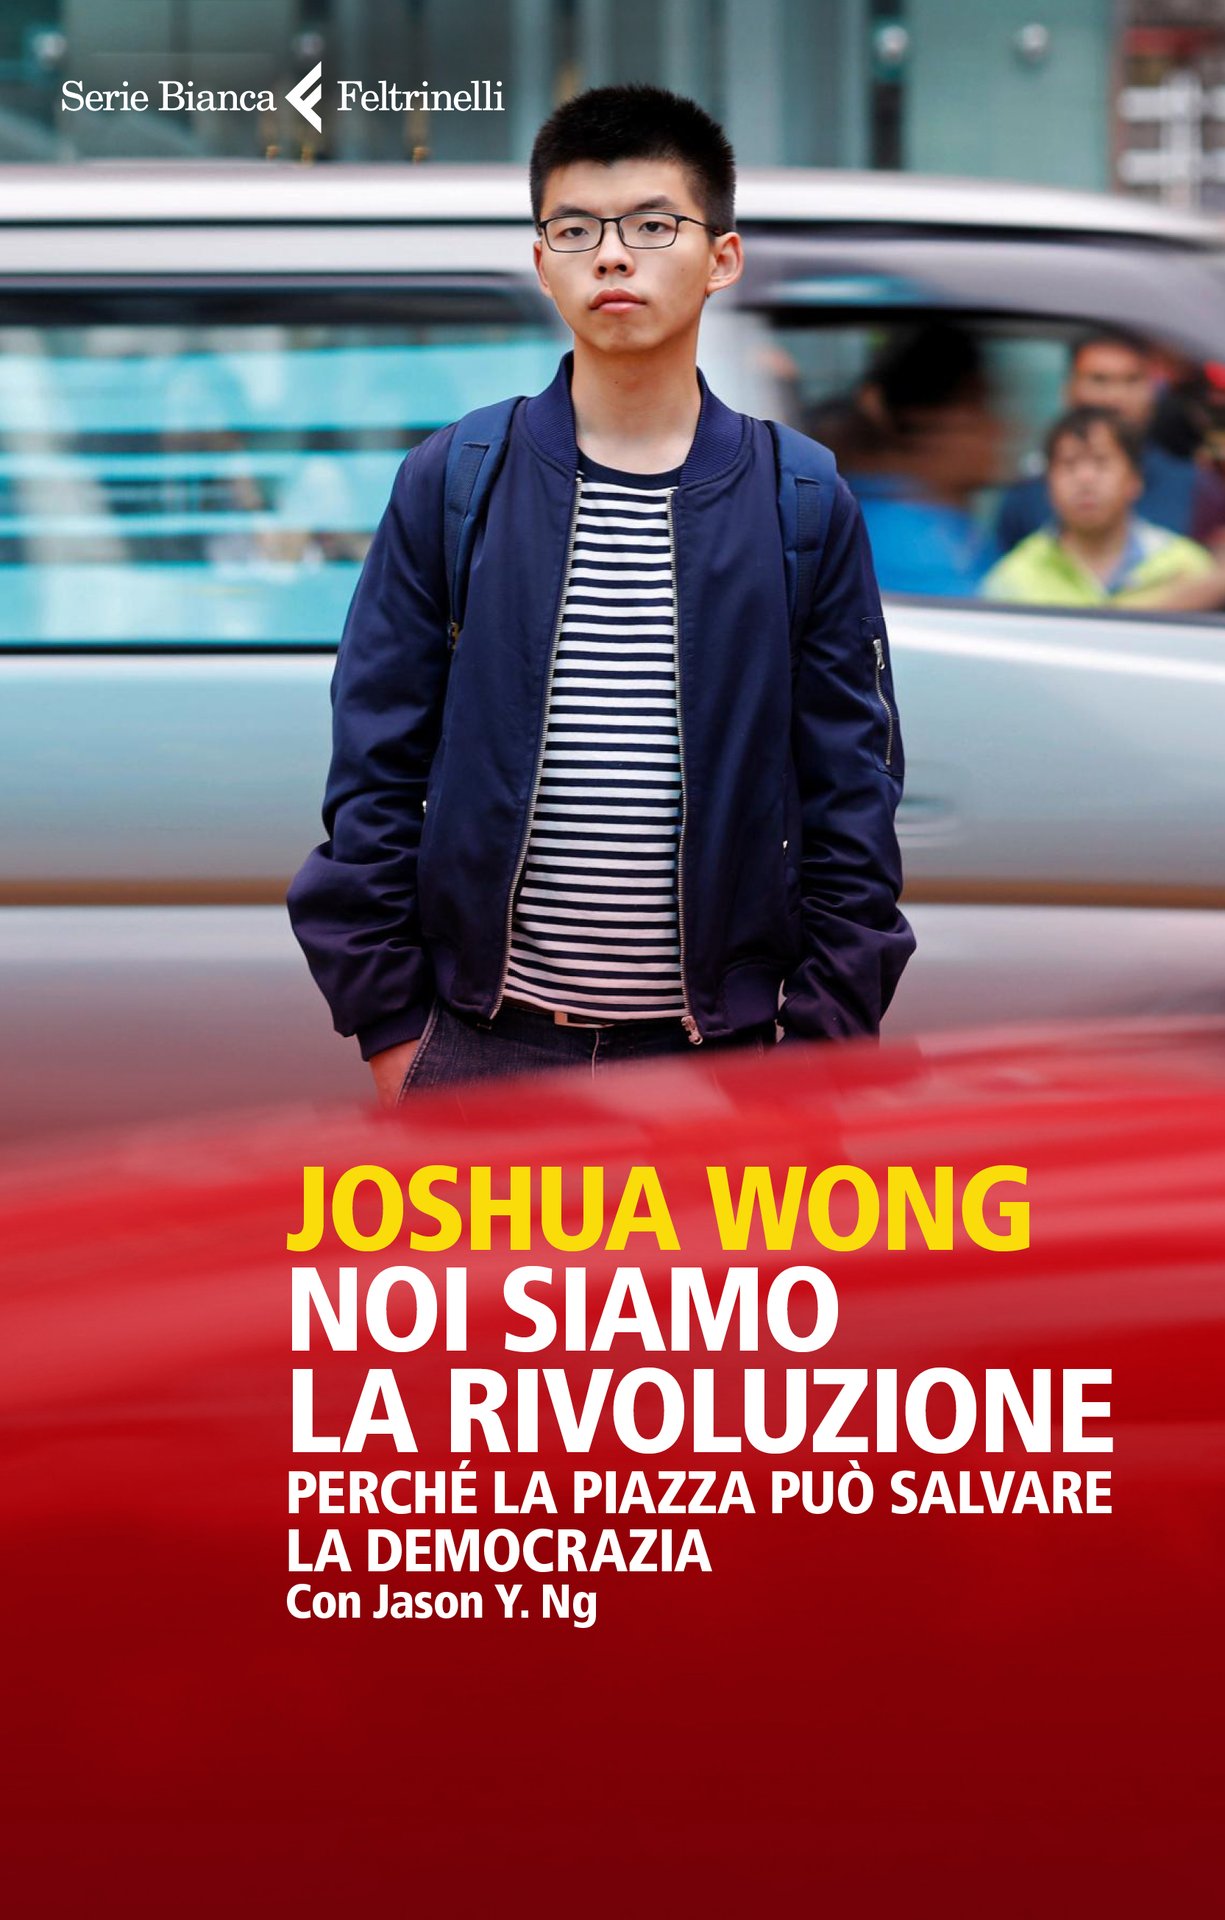 Un grido di allarme da Joshua Wong